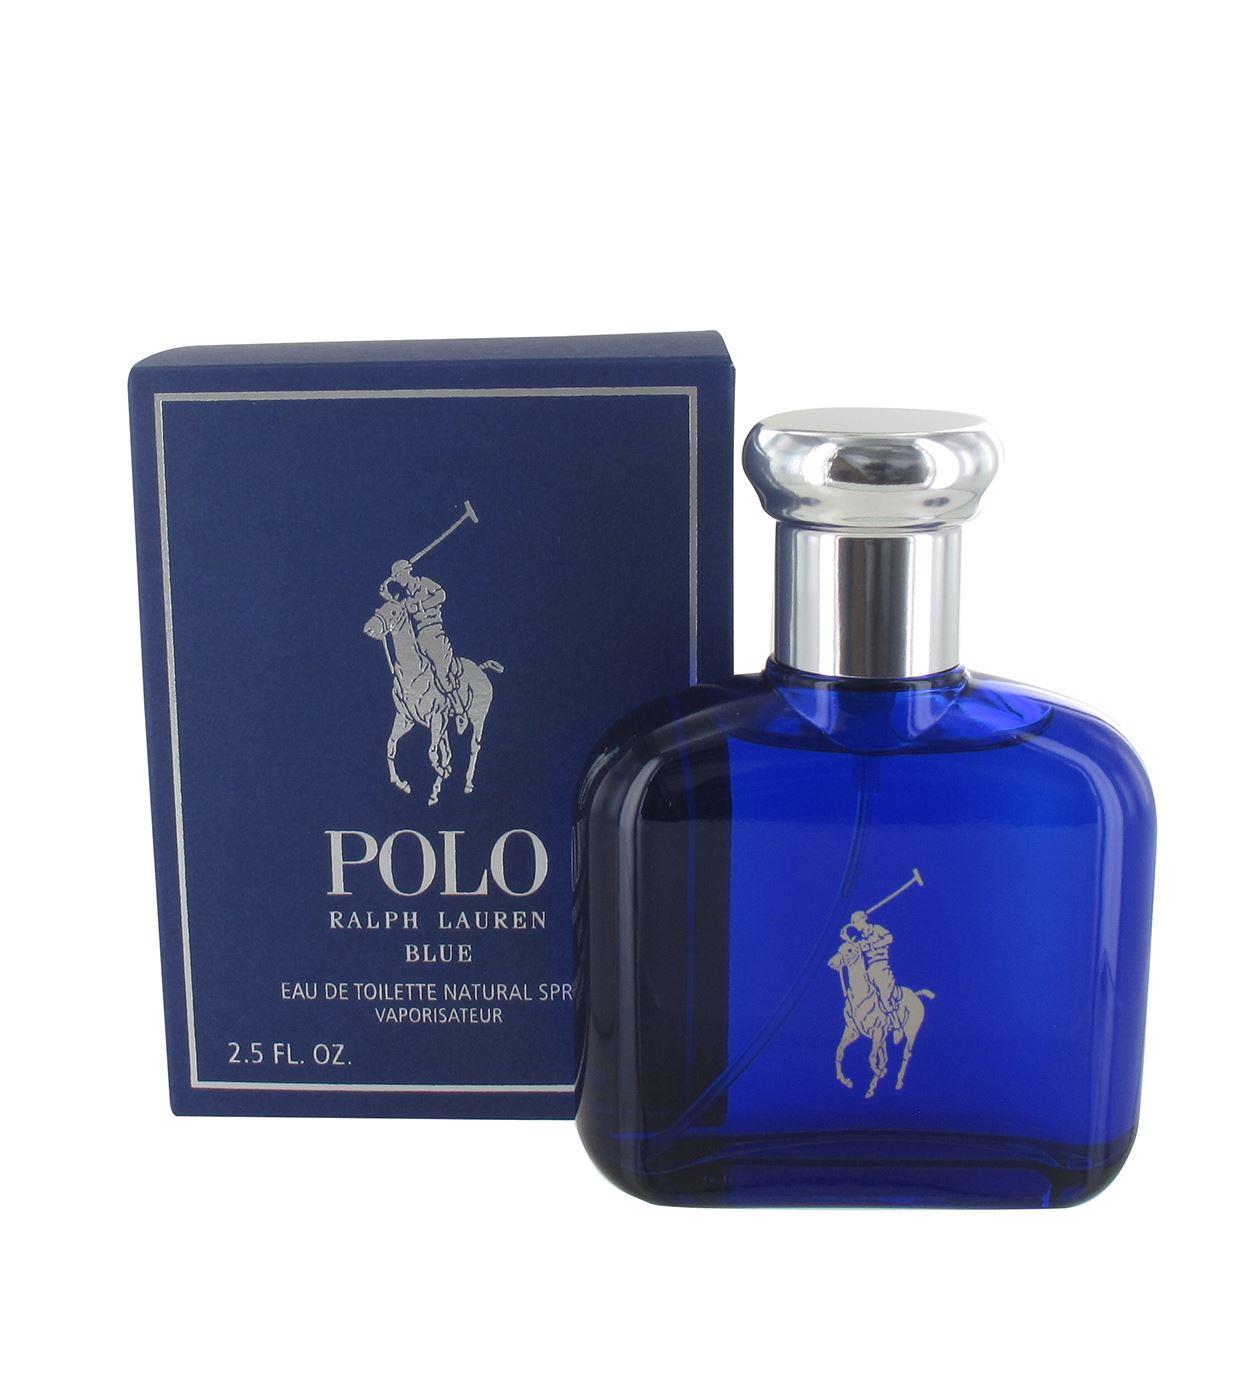 Ralph Lauren Polo Blue 75ml Eau de Toilette Spray for Him from Perfume Plus Direct